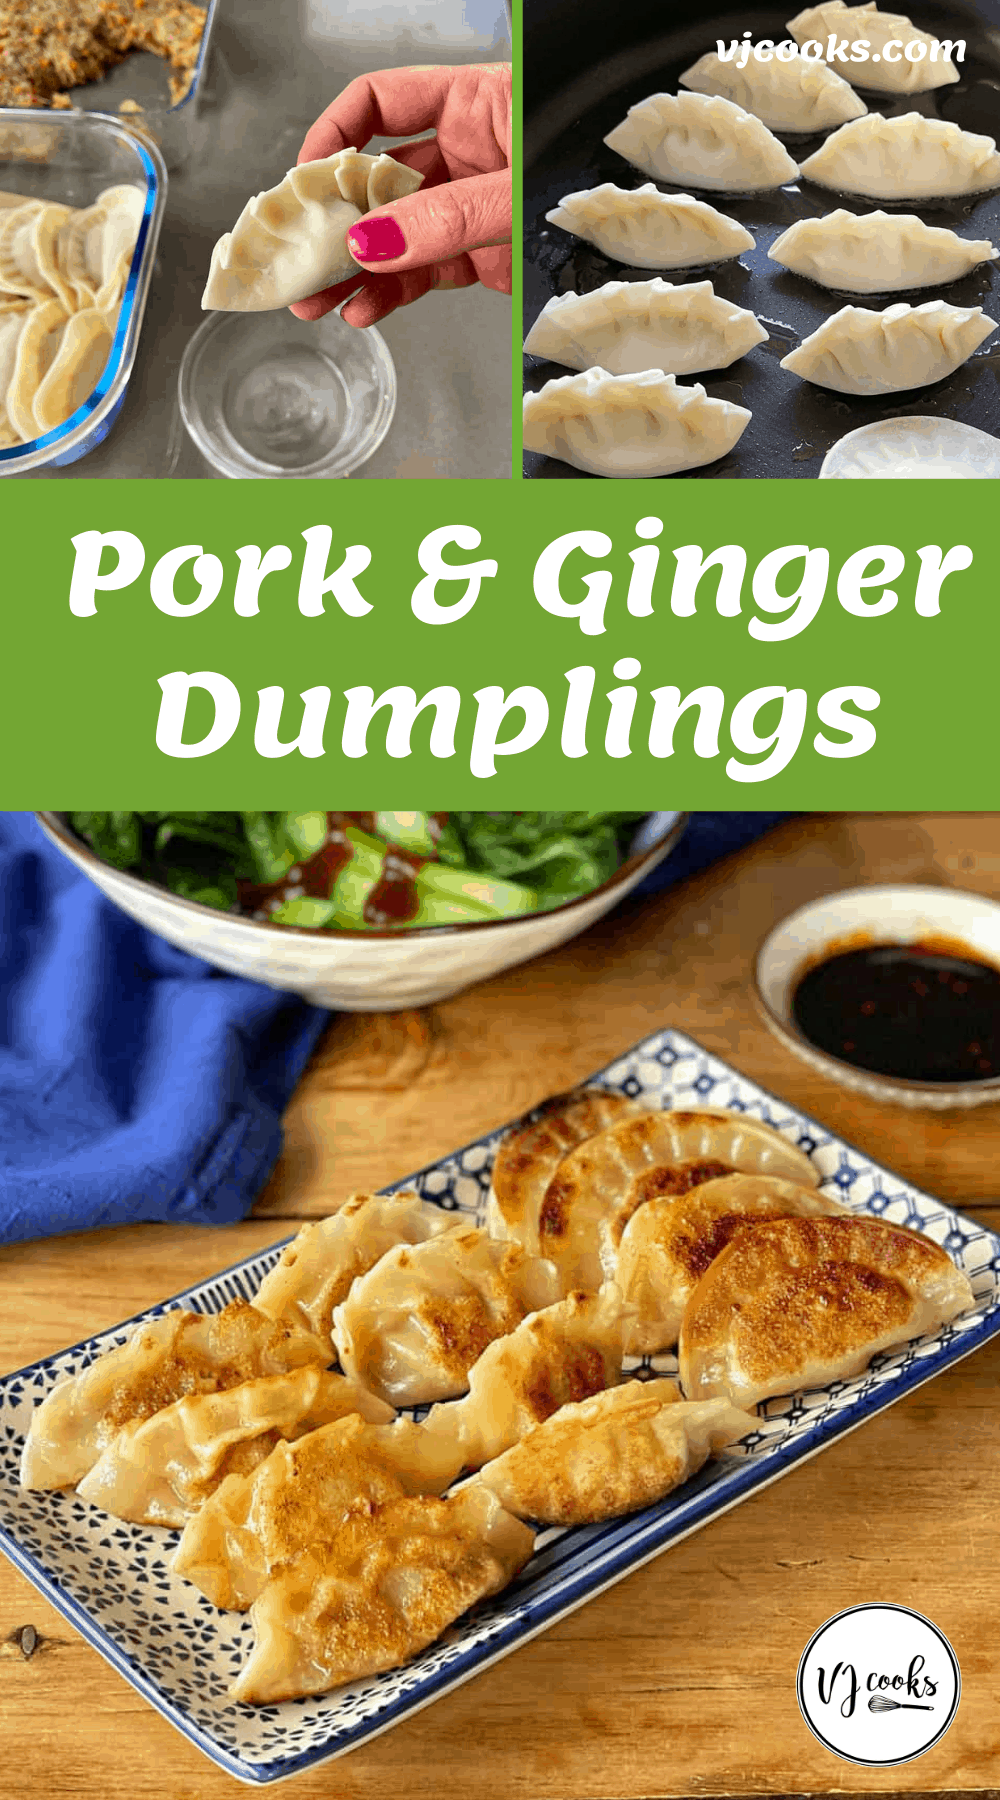 Pork and ginger dumplings